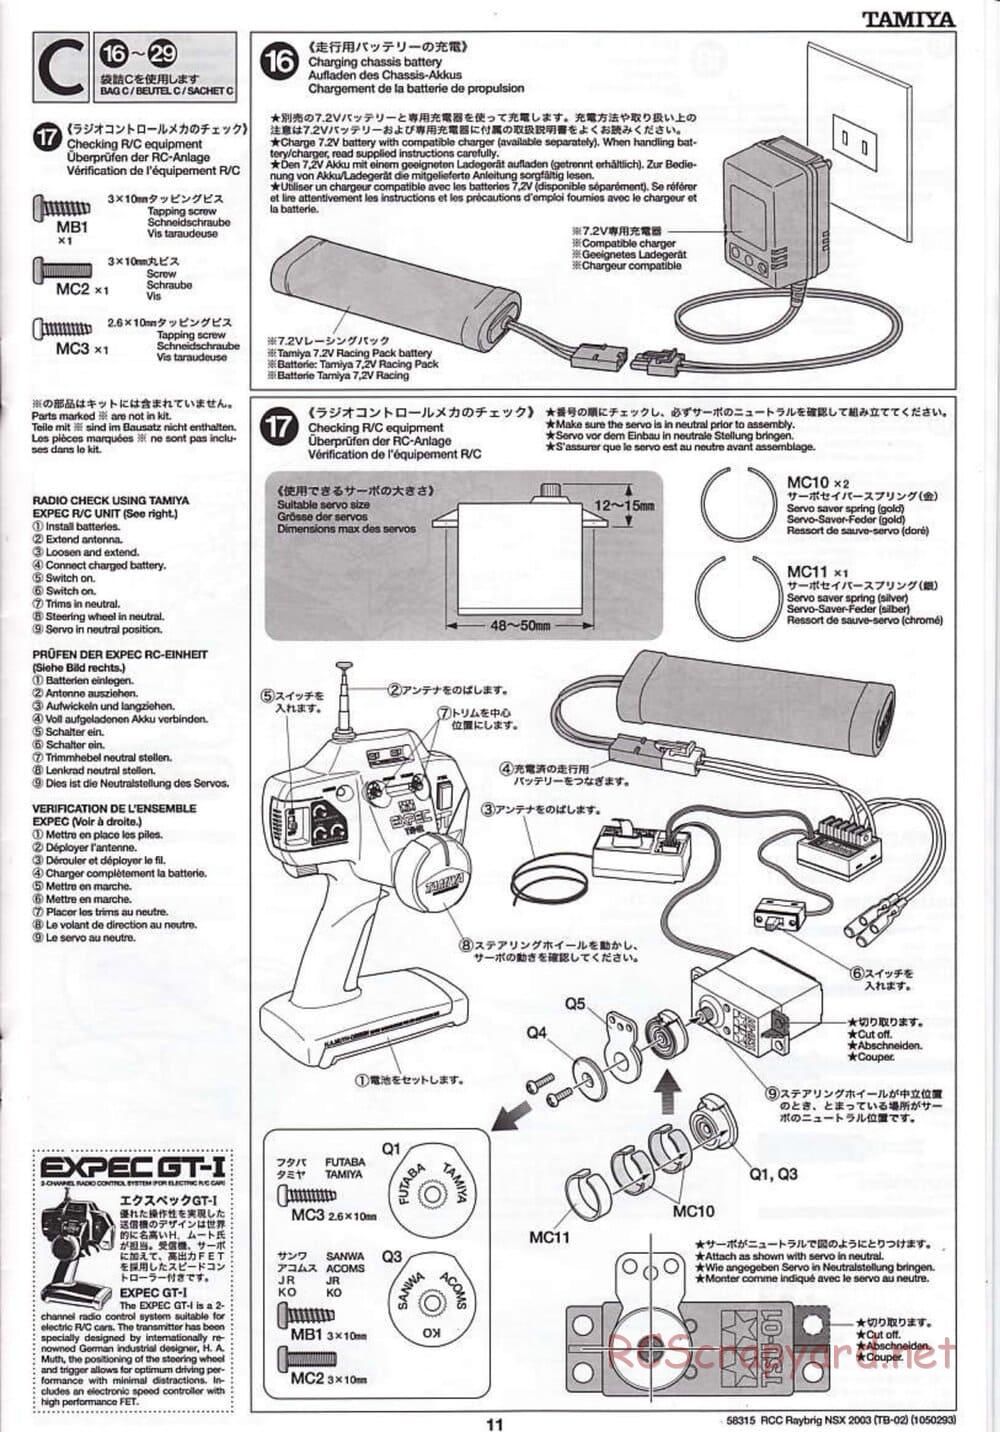 Tamiya - Raybrig NSX 2003 - TB-02 Chassis - Manual - Page 11